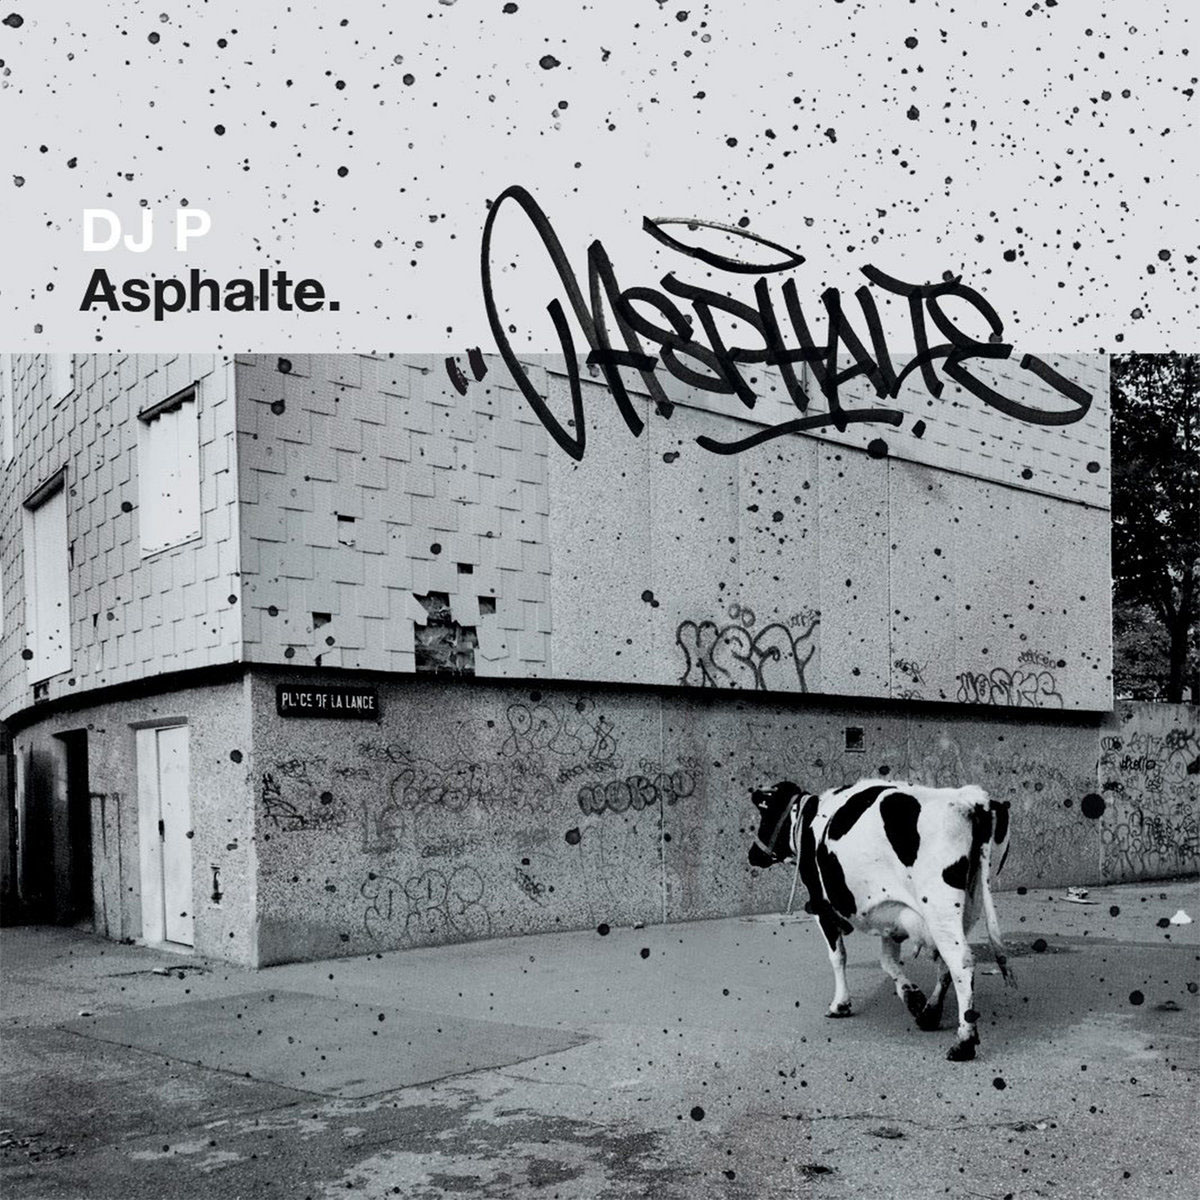 Asphalte-mixtape-hip-hop-Dj-P